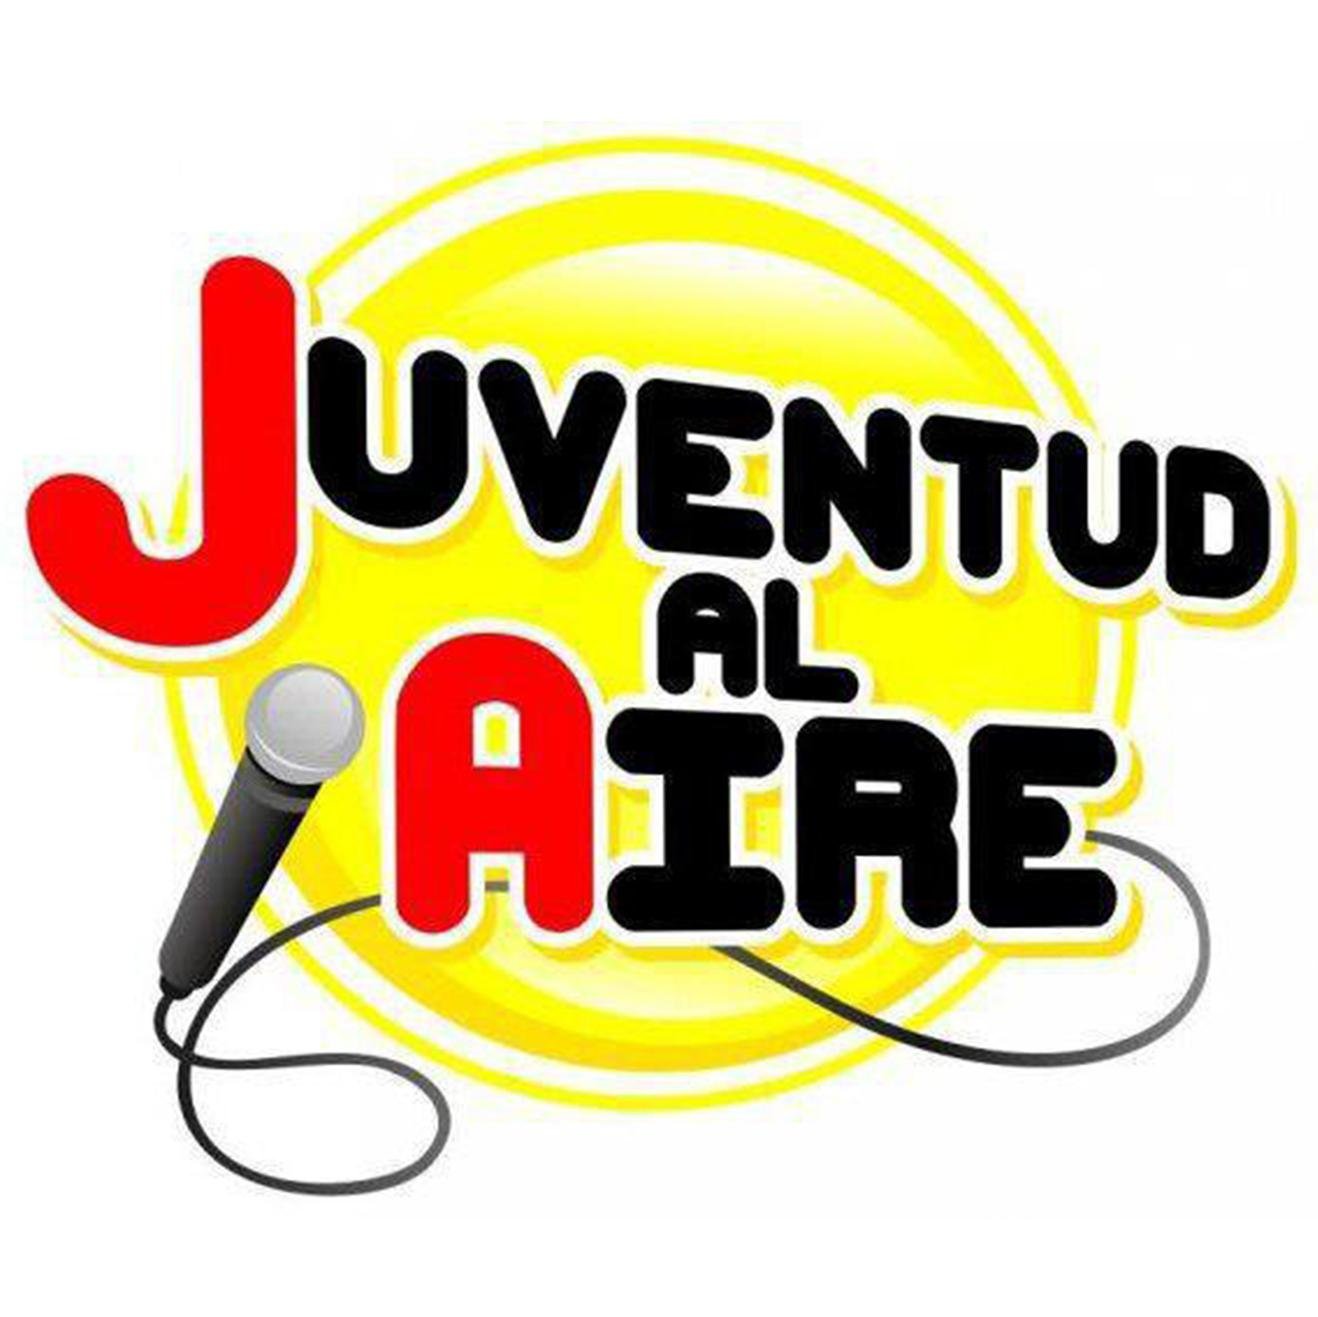 Juventud Al Aire es un programa de radio para chavos y chavas como tu! nos puedes escuchar todos los domingos de 9:00 a 10:00 de la mañana por Sónica 106.9 FM.